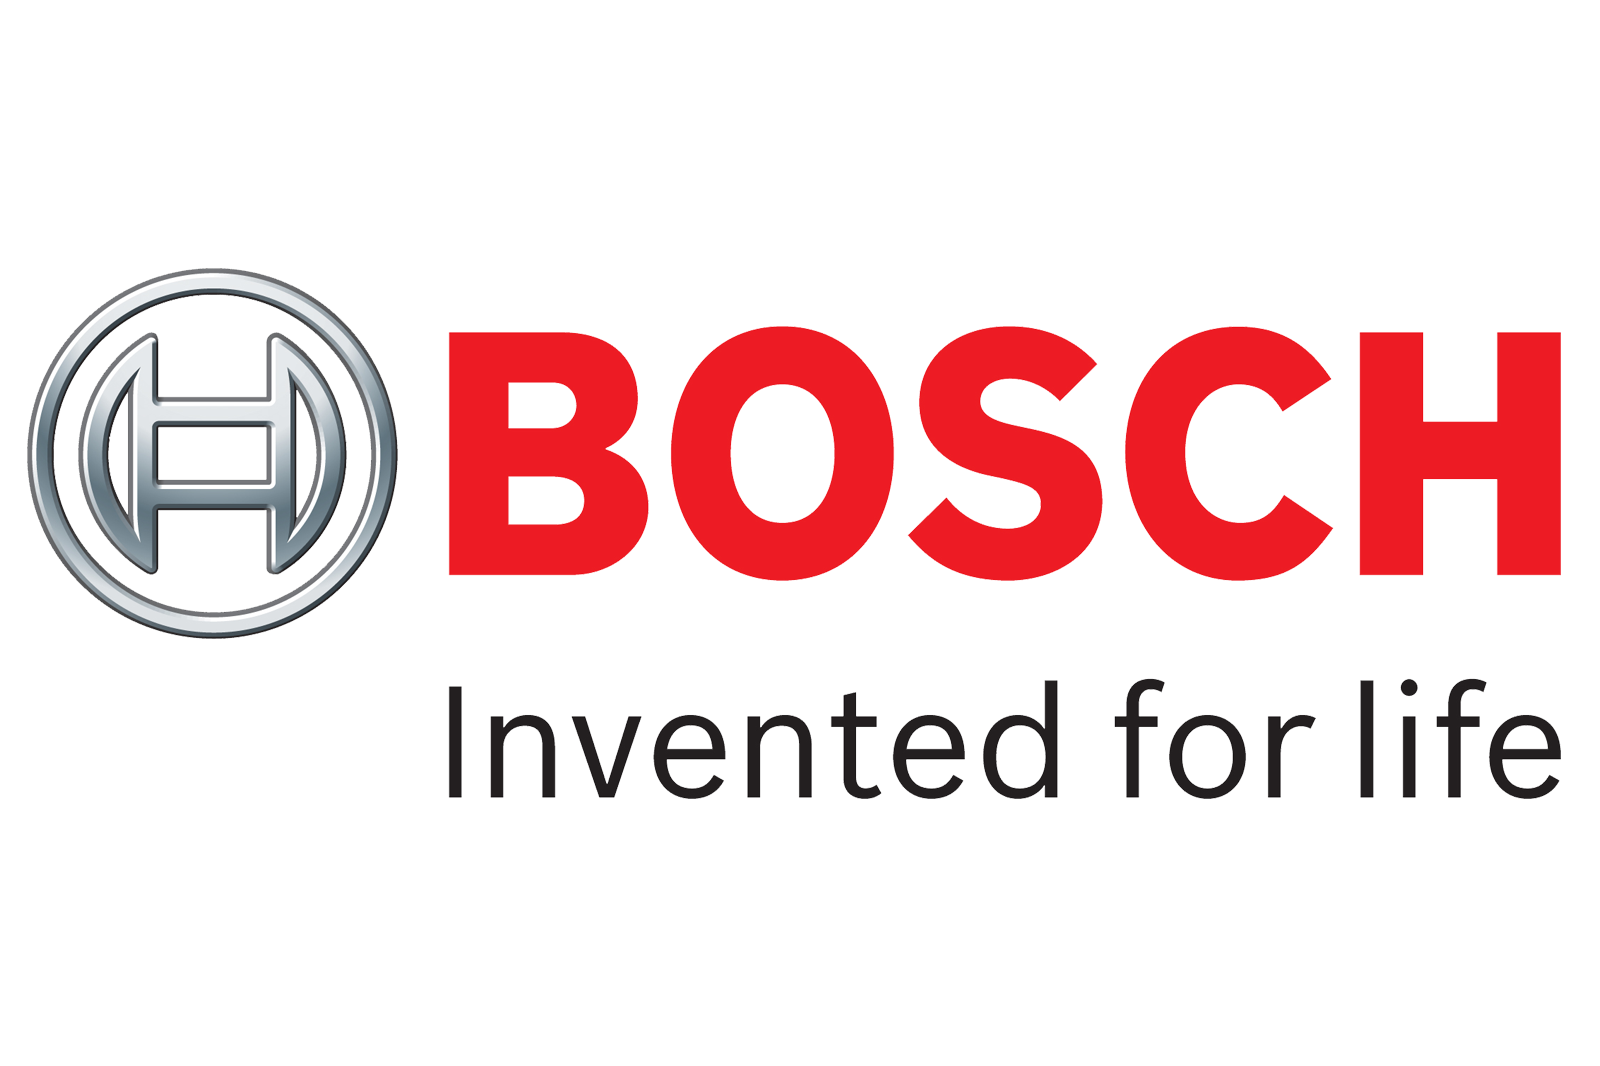 Bosch Created Volkswagen Dieselgate Cheat Software Study Alleges